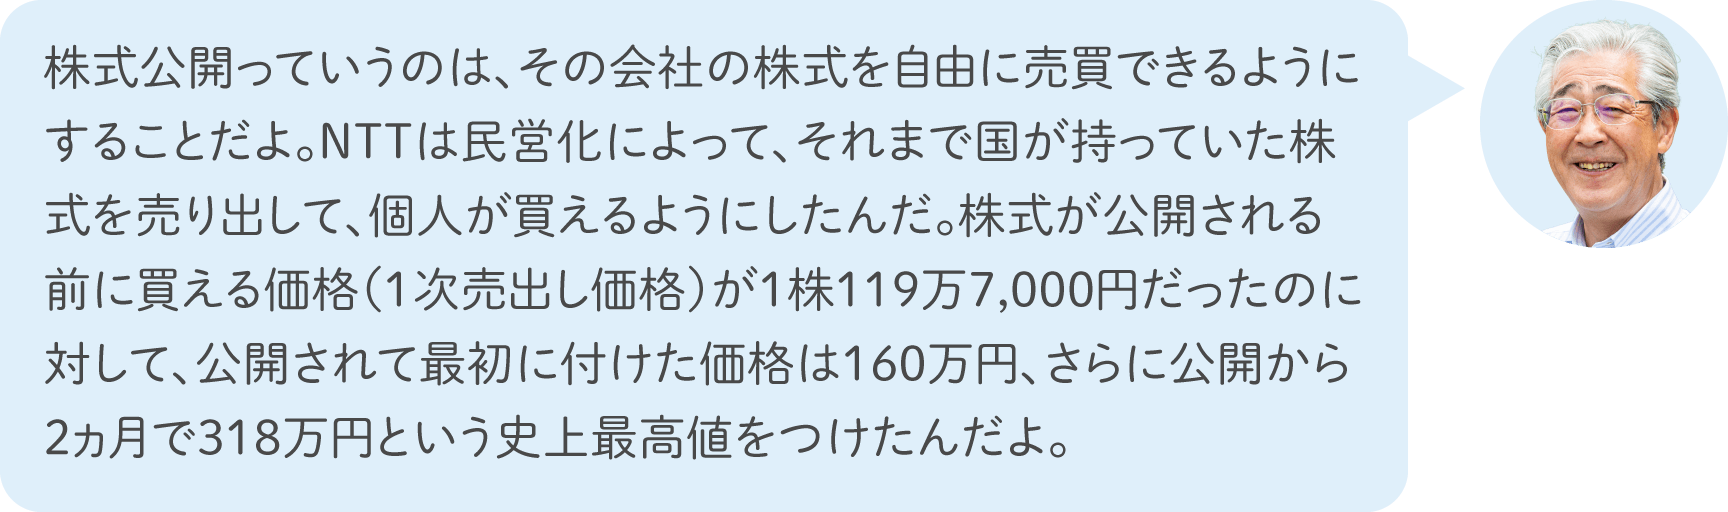 株式公開っていうのは、その会社の株式を自由に売買できるようにすることだよ。NTTは民営化によって、それまで国が持っていた株式を売り出して、個人が買えるようにしたんだ。株式が公開される前に買える価格（1次売出し価格）が1株119万7,000円だったのに対して、公開されて最初に付けた価格は160万円、さらに公開から2ヵ月で318万円という史上最高値をつけたんだよ。